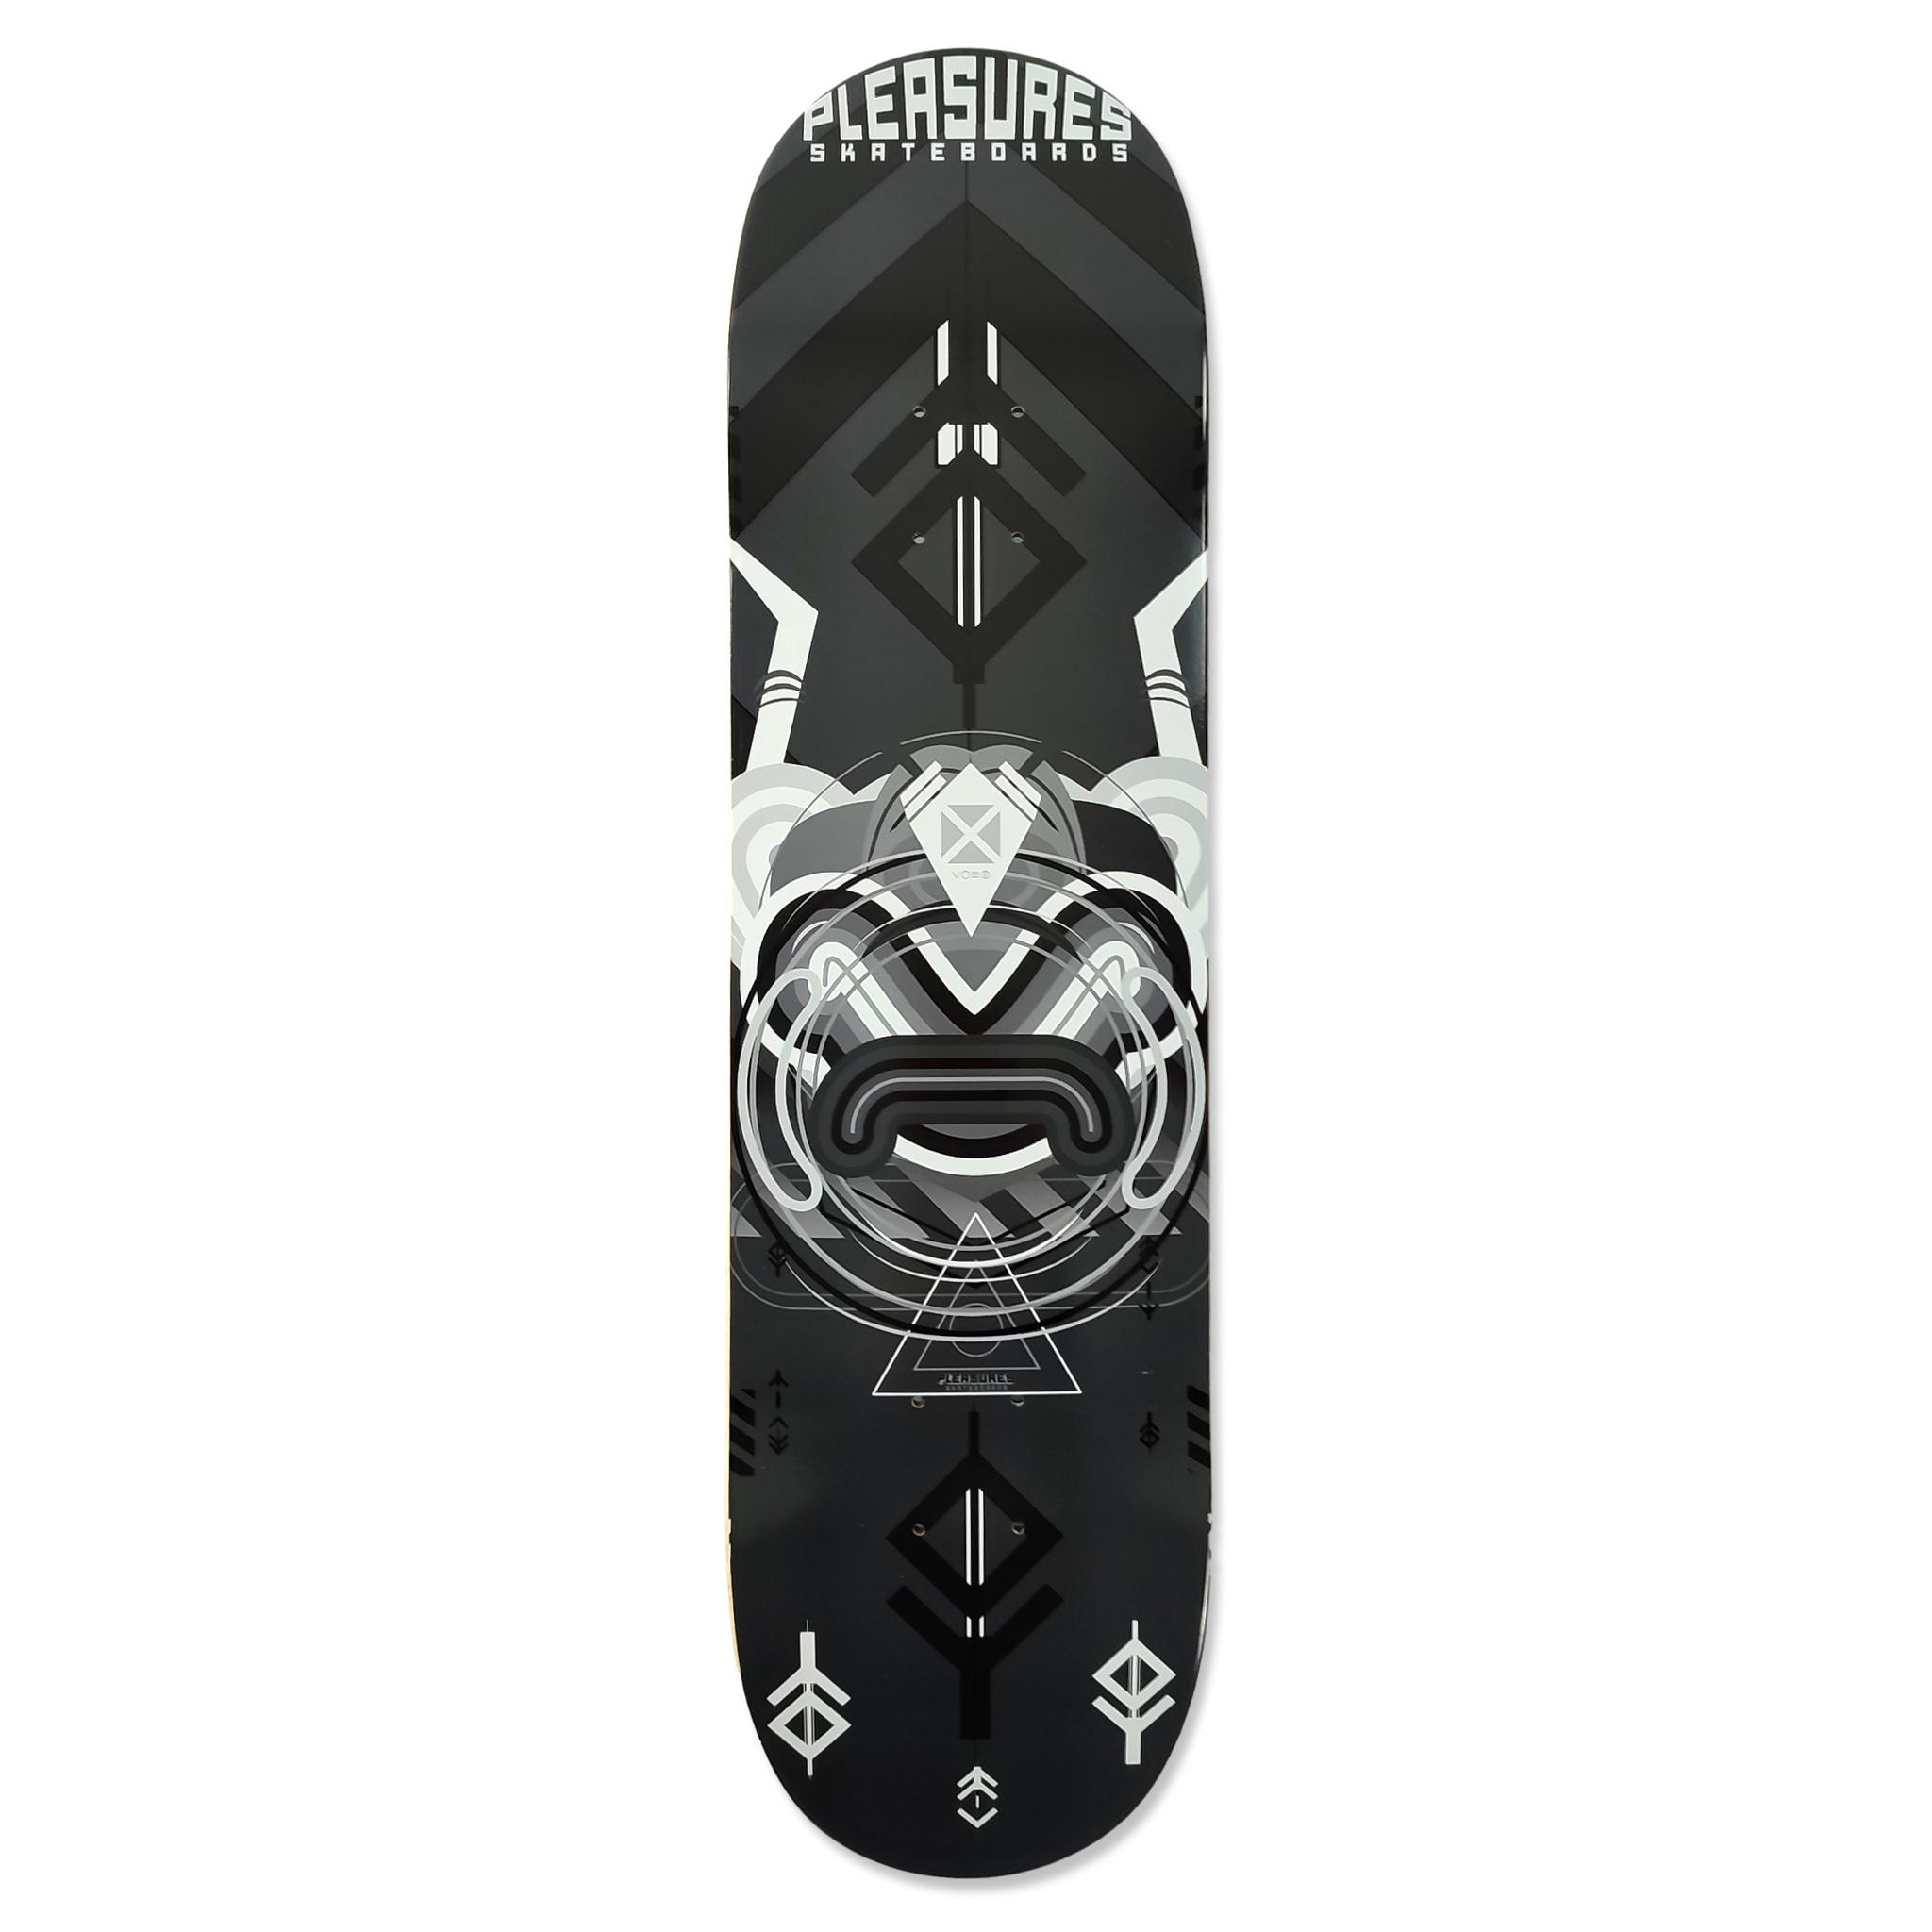 Pleasures Skateboards Tavola Mask 8.1